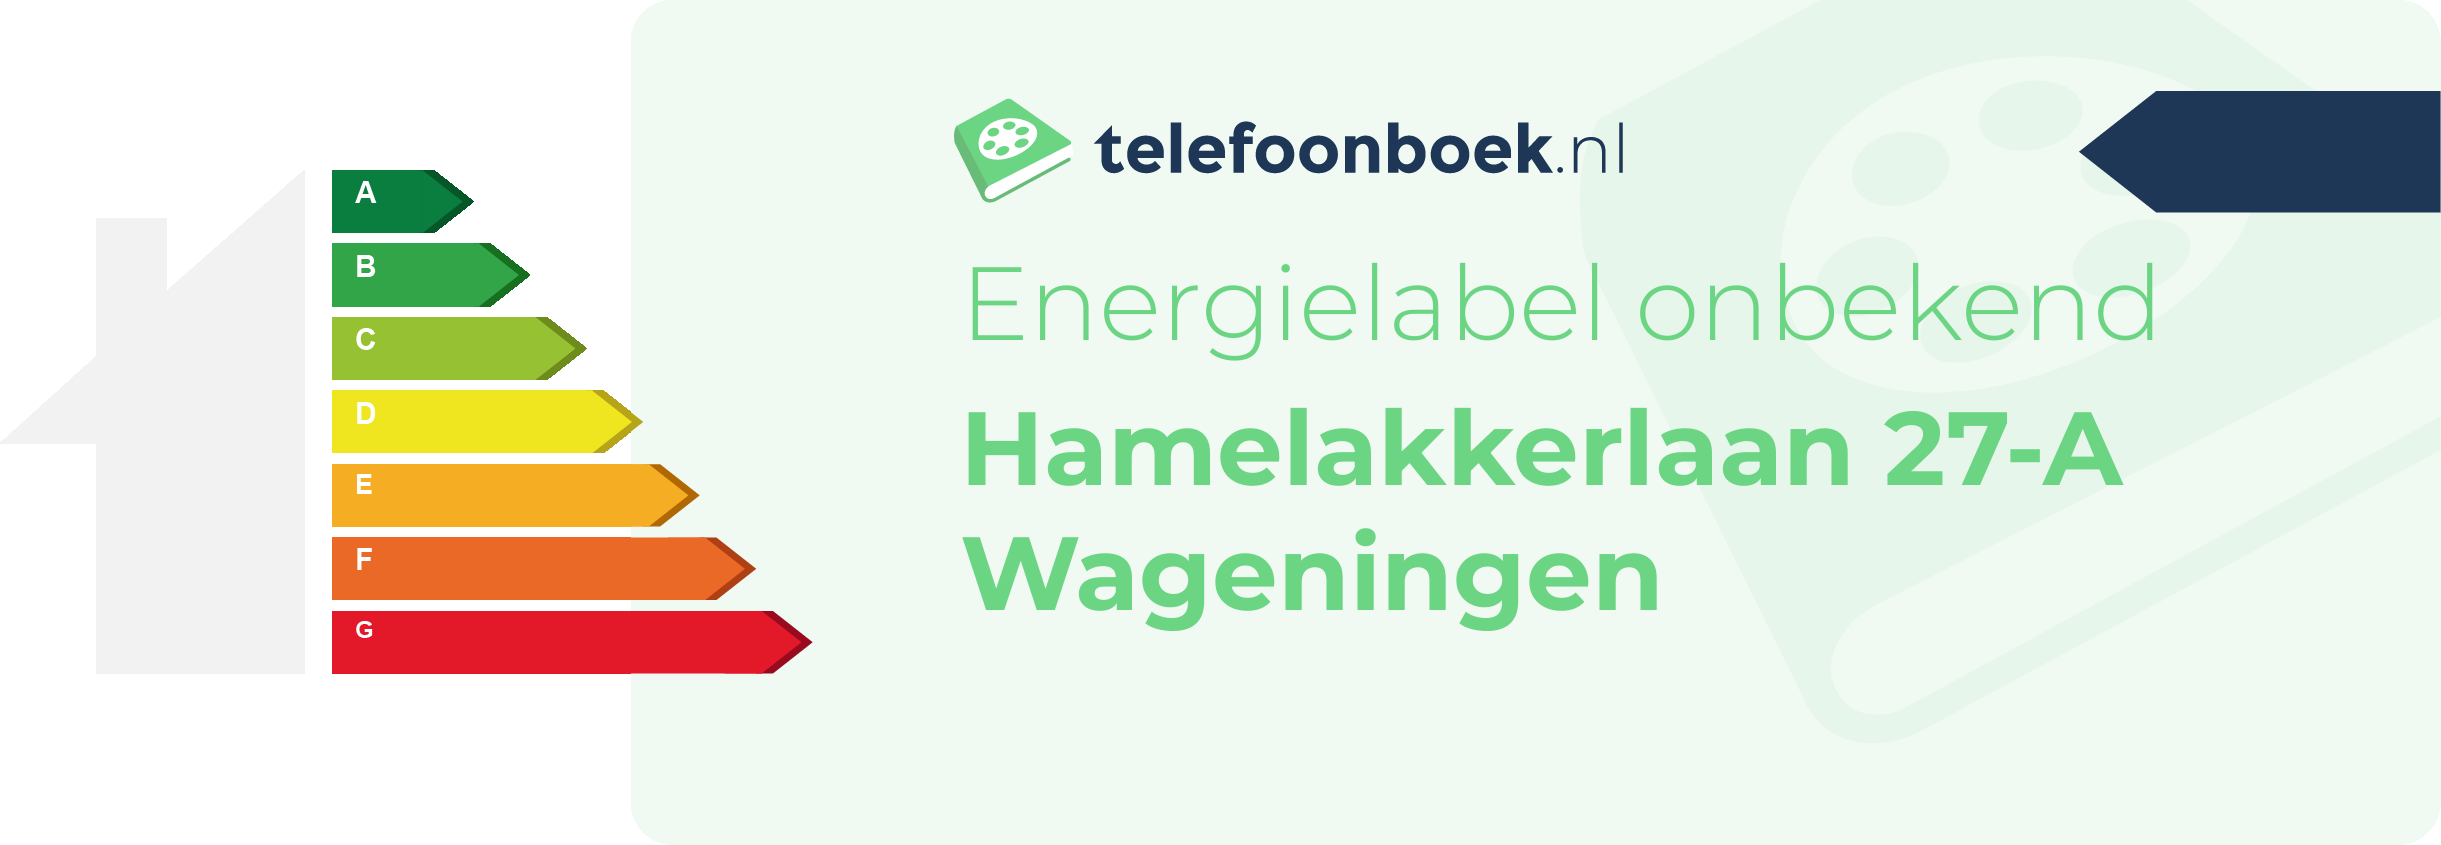 Energielabel Hamelakkerlaan 27-A Wageningen